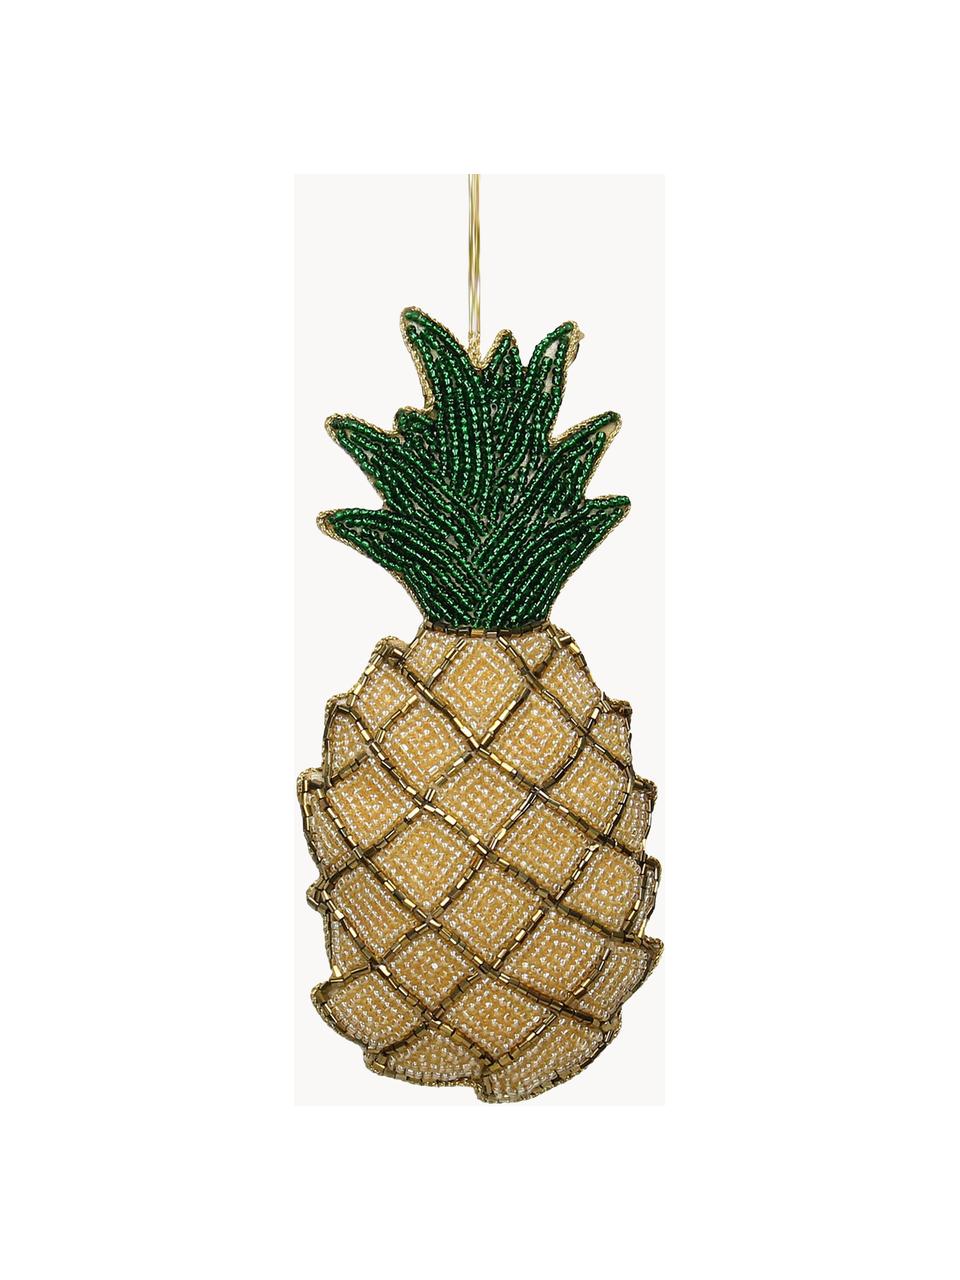 Ozdoba na stromeček Pineapple, Žlutá, zelená, zlatá, Š 7 cm, V 16 cm